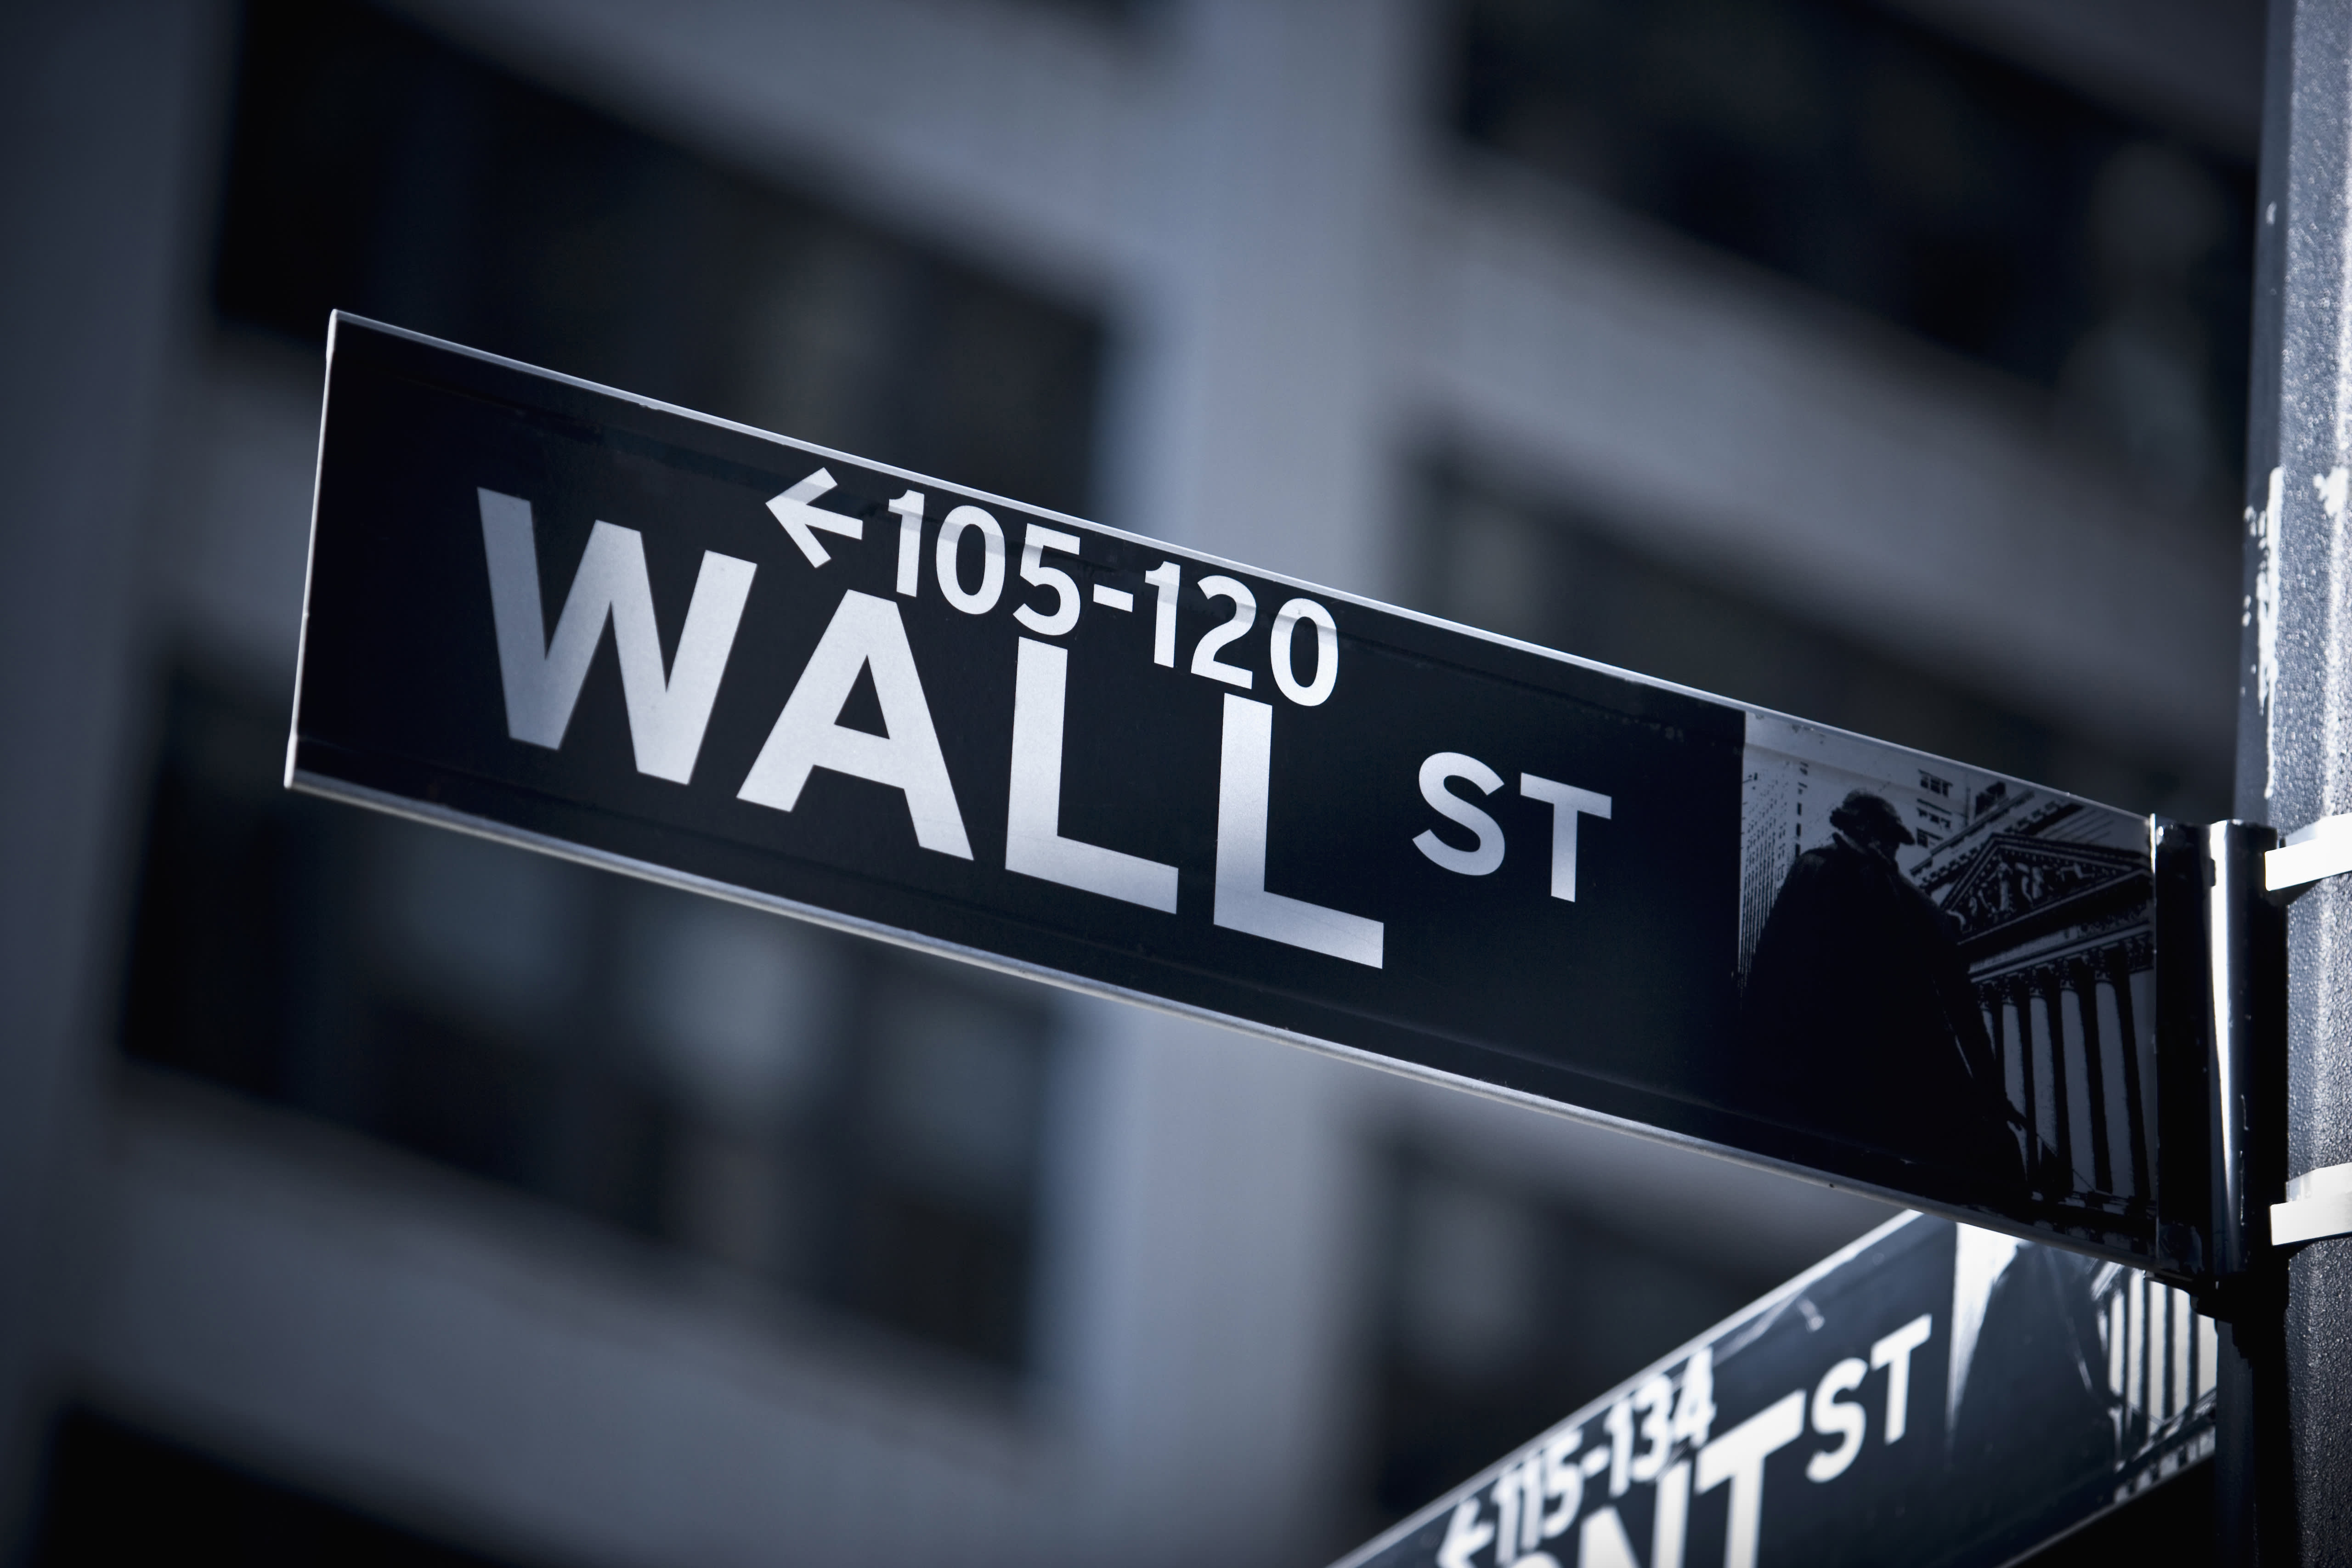 Wall Street Market Darknet Link